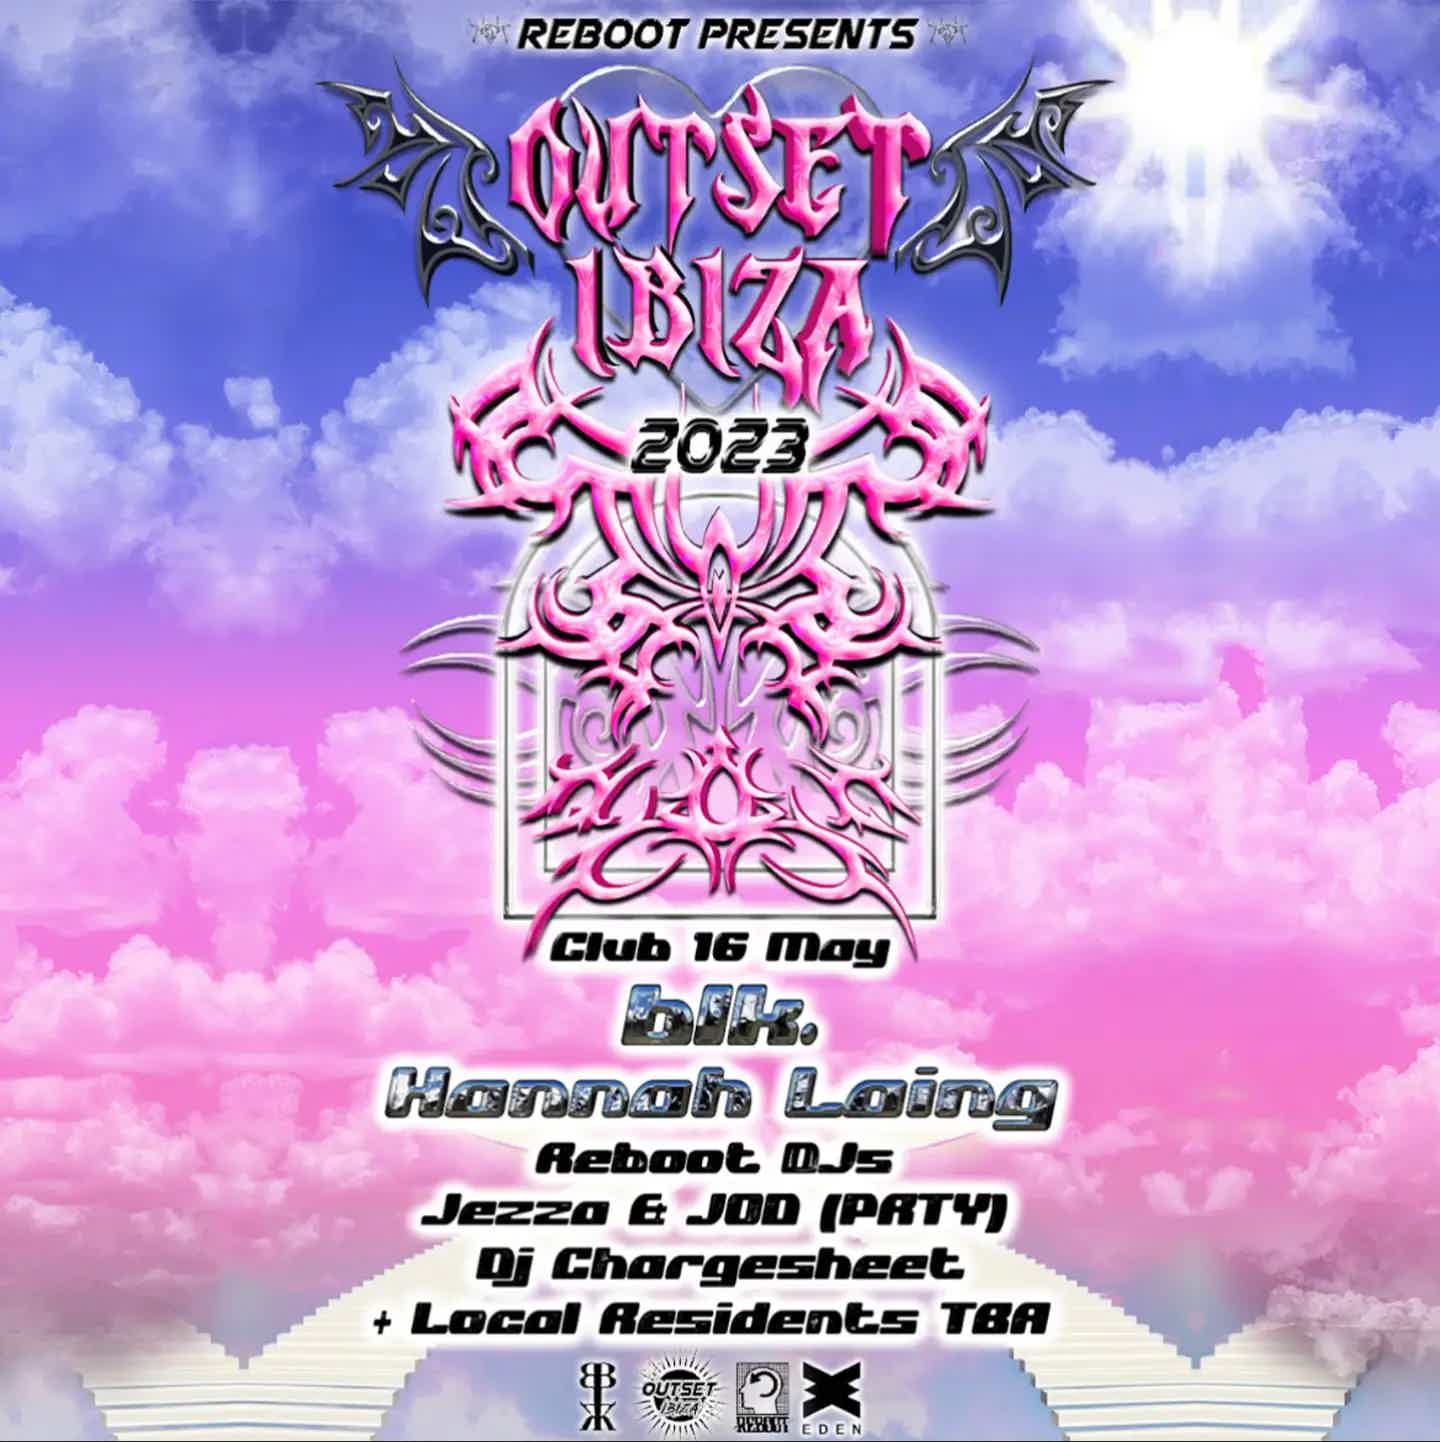 EDEN IBIZA party Reboot presents Outset Ibiza tickets and info, party calendar Eden Ibiza club ibiza